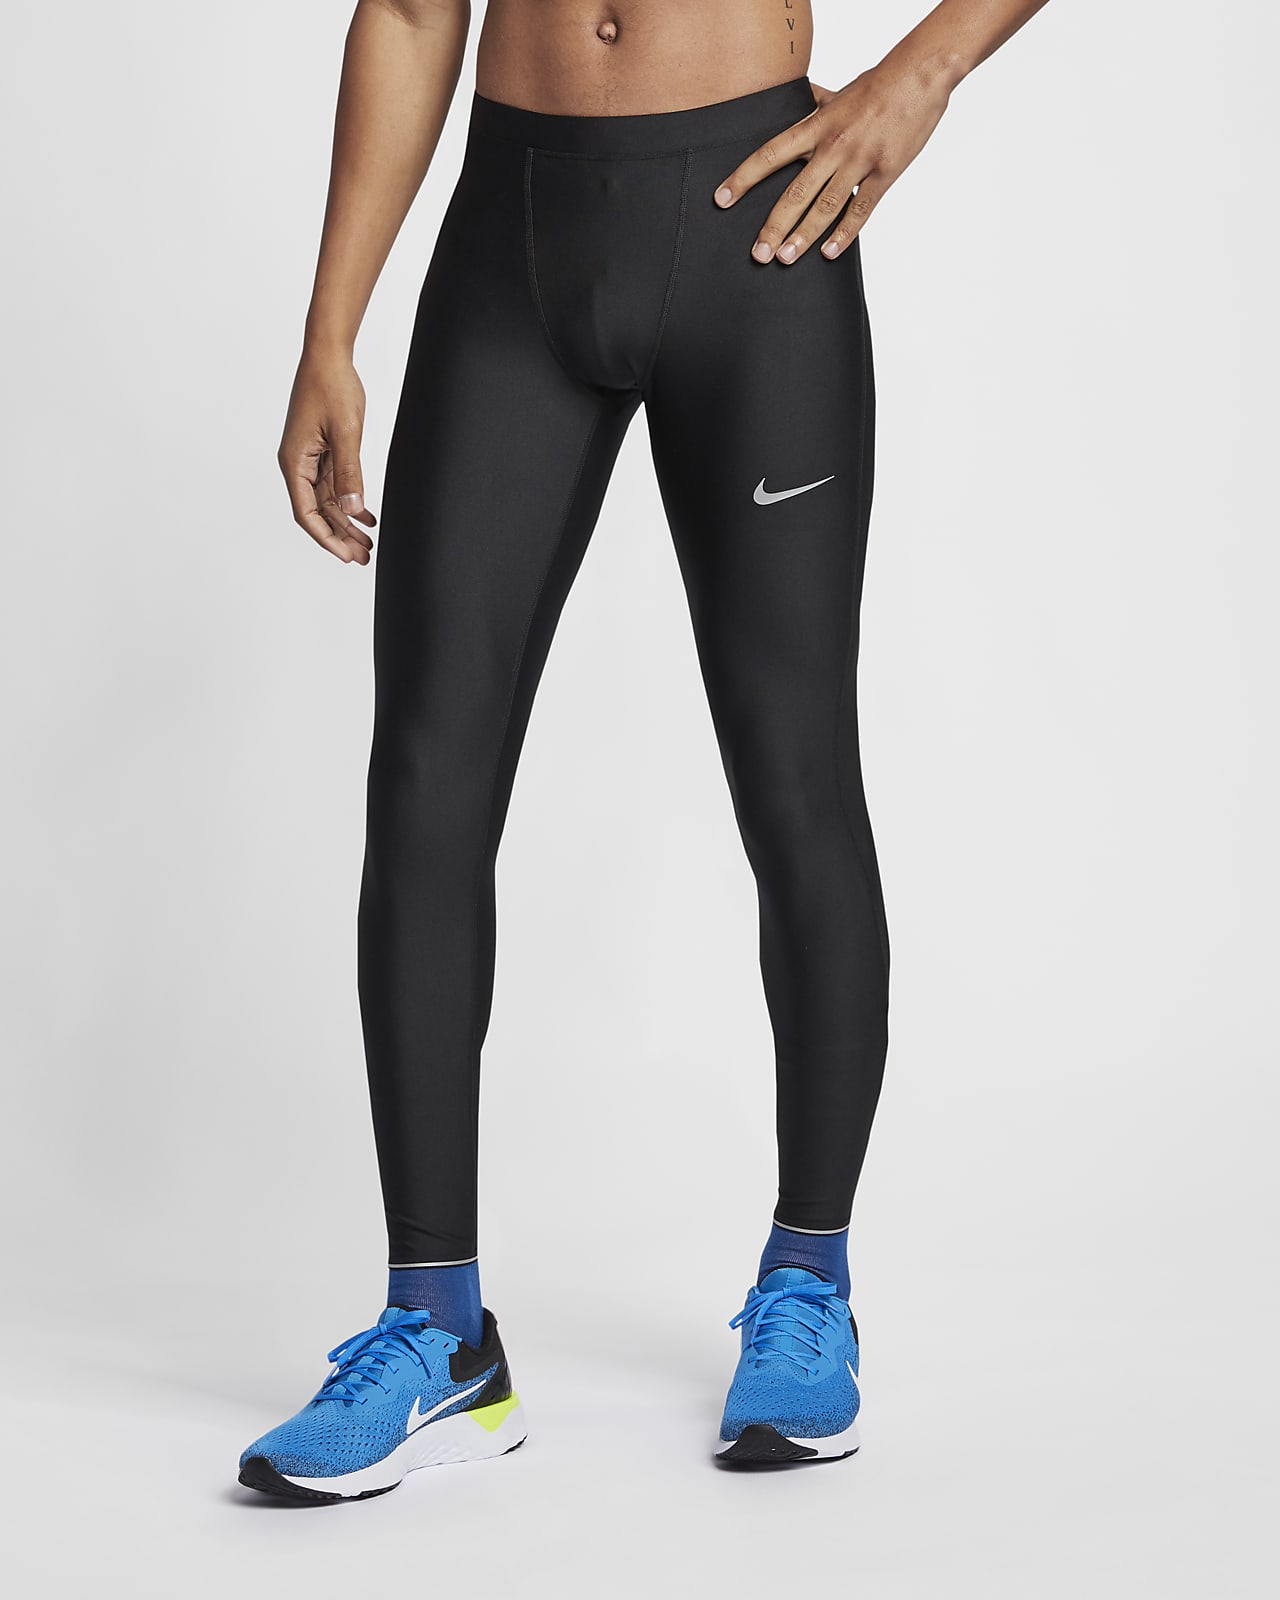 Nike Men's Running Tights. Nike SG